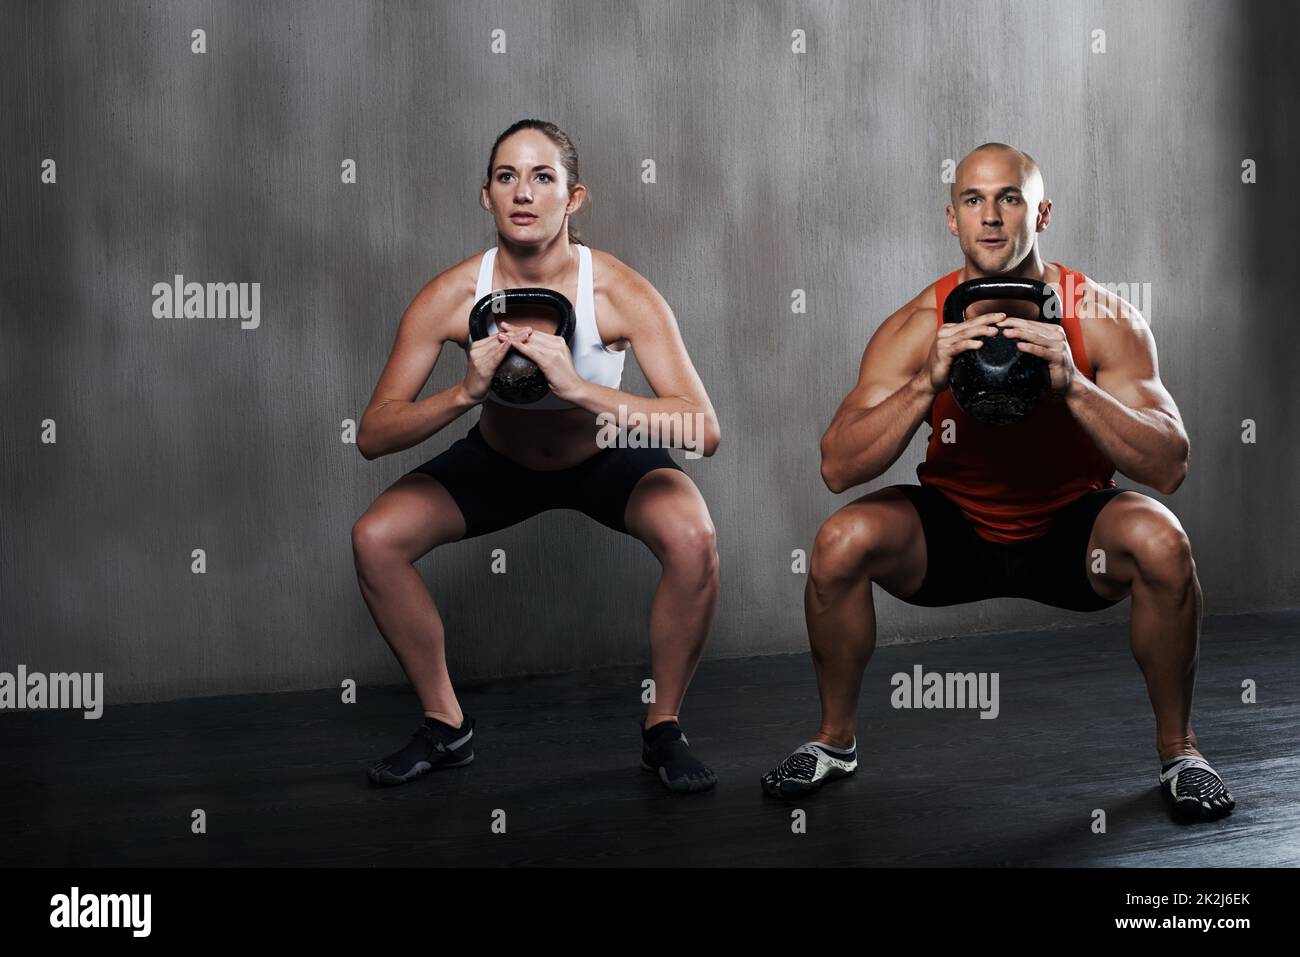 Trainiere verrückt oder bleibe gleich. Ein Mann und eine Frau trainieren mit den Kettelglocken im Fitnessstudio. Stockfoto